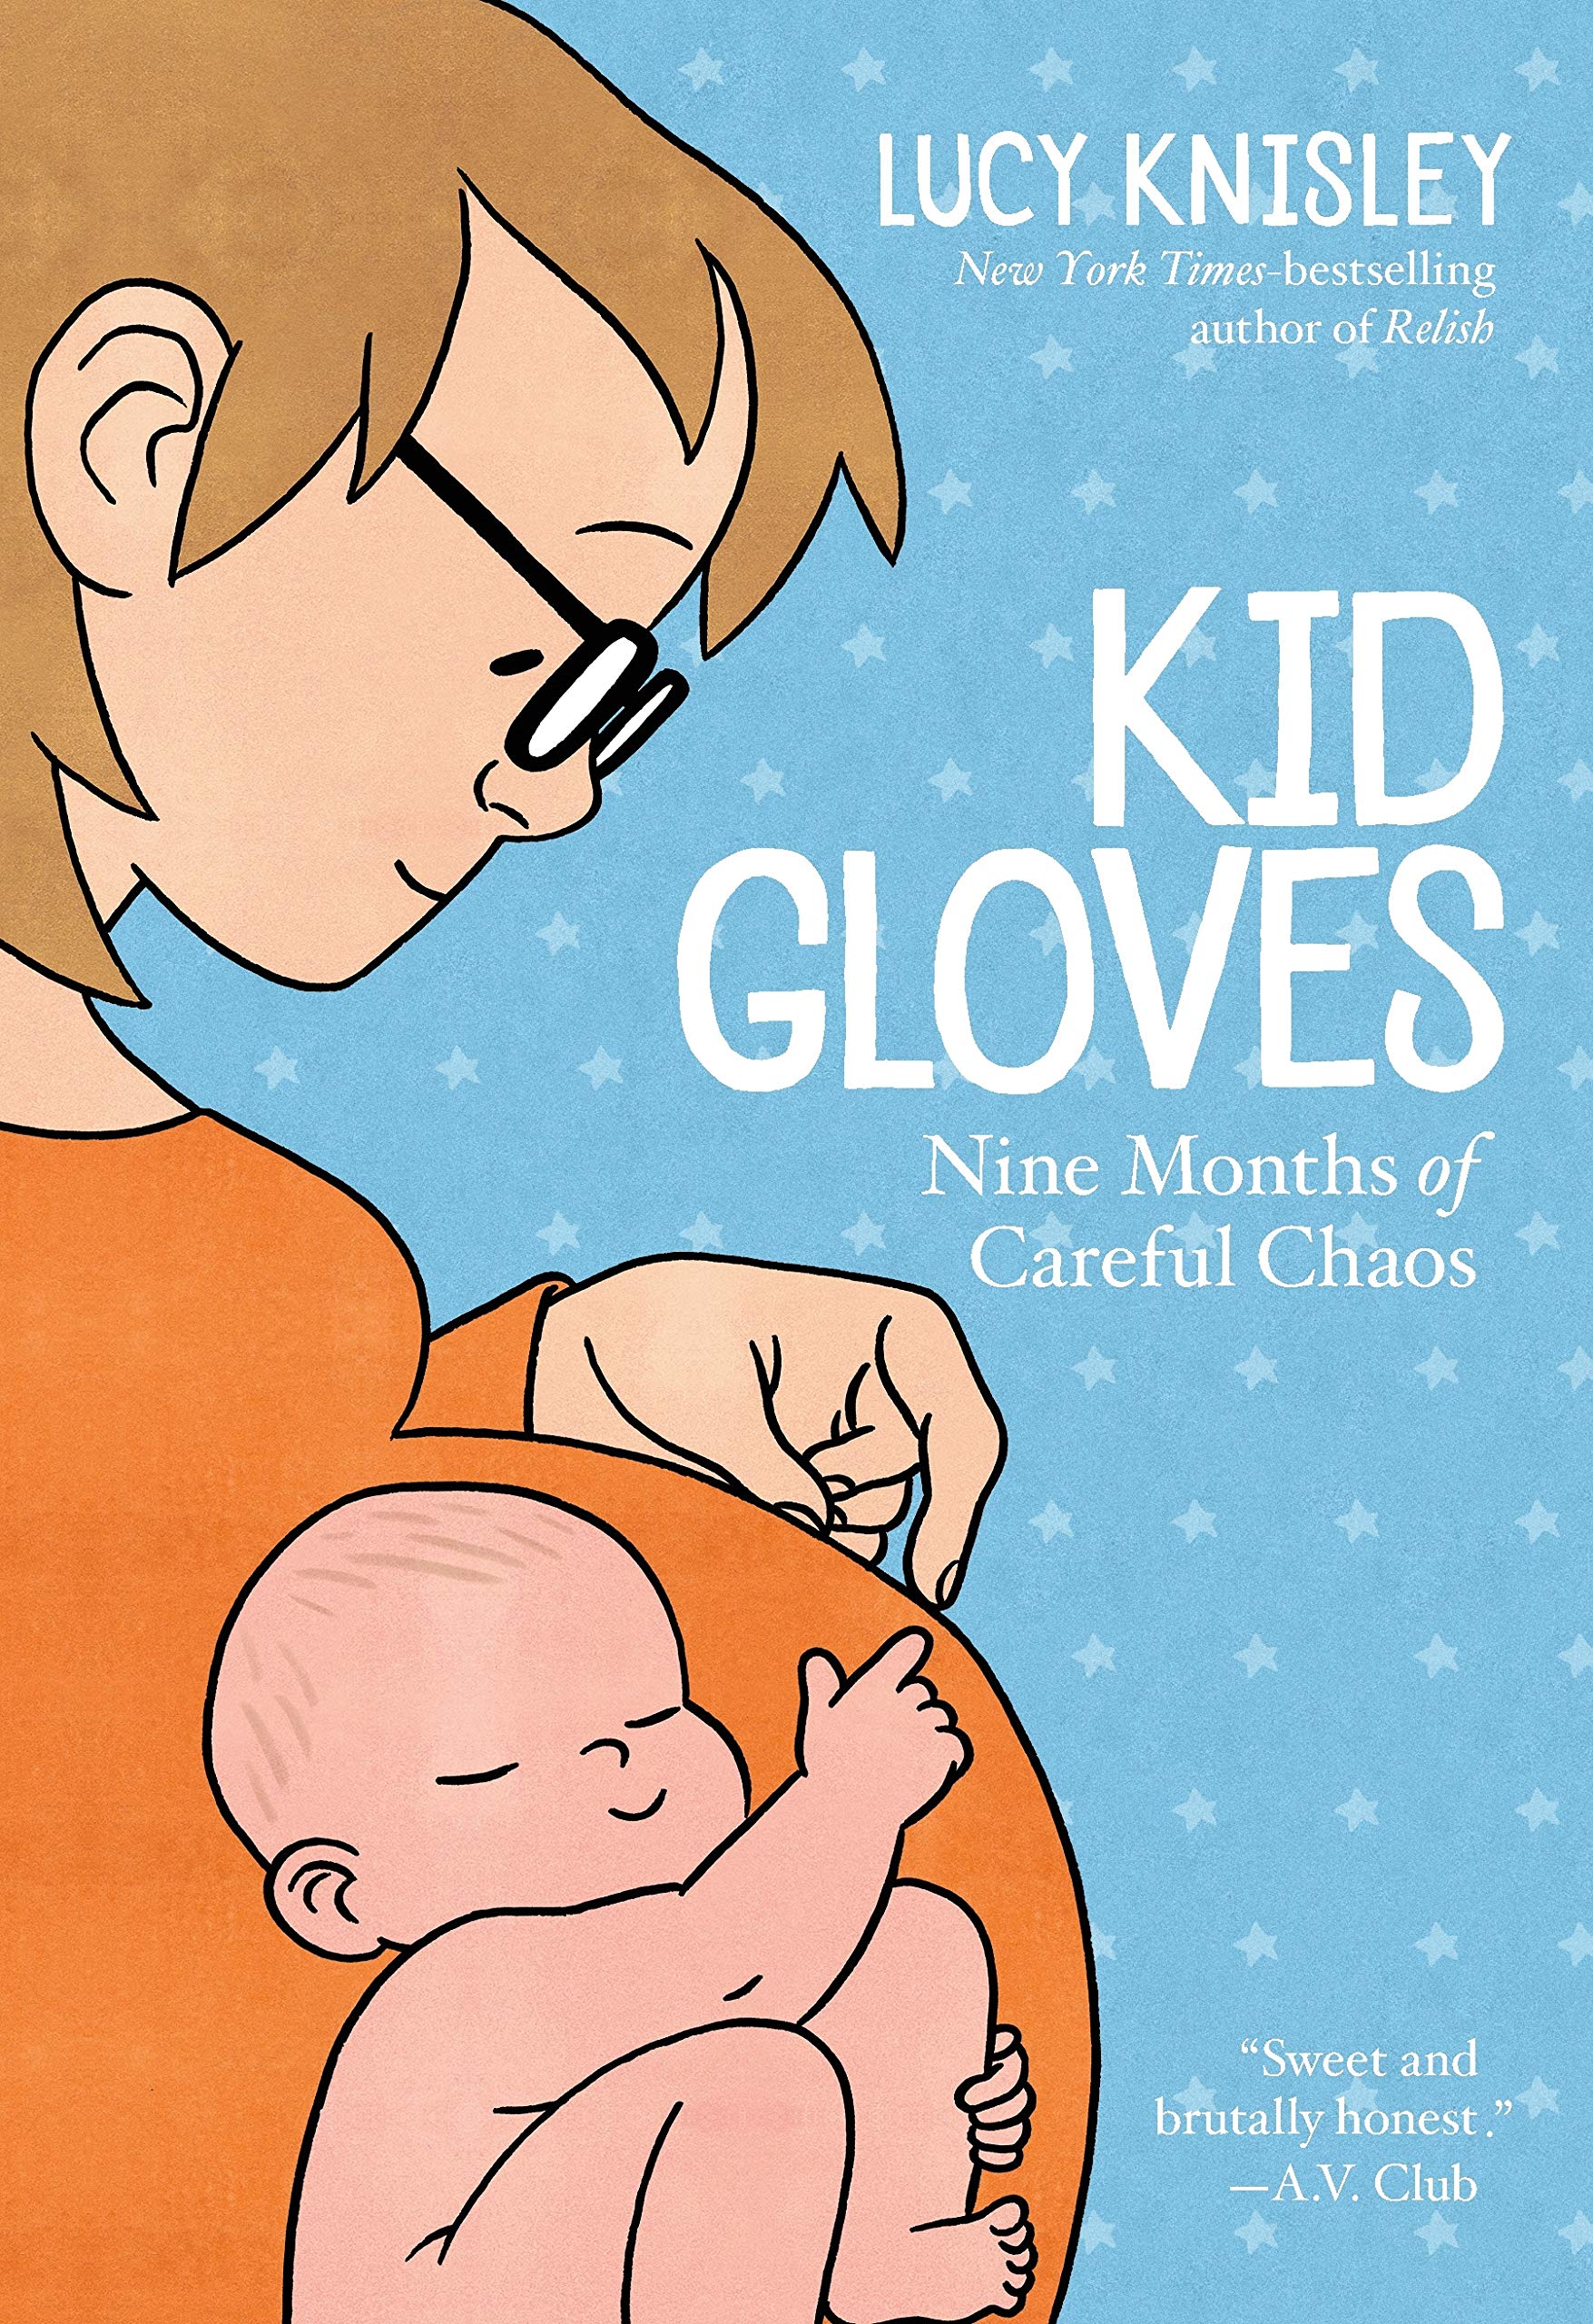 Image for "Kid Gloves"